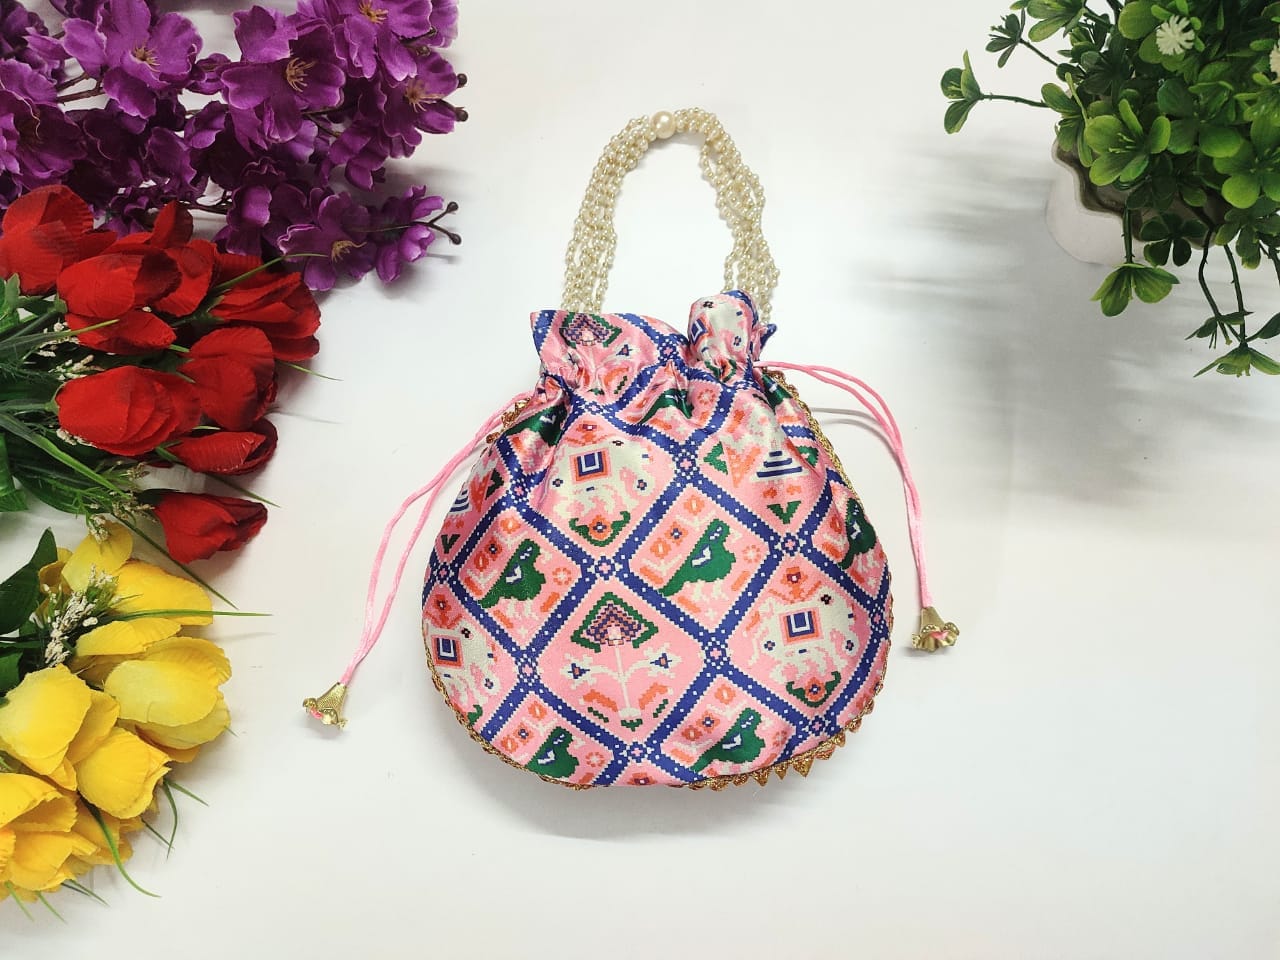 LAMANSH ® Women's Potli Bag Pack of 20 LAMANSH® (Pack of 20 Pcs) Potli bags for women handbags traditional Indian Wristlet with Gota Work